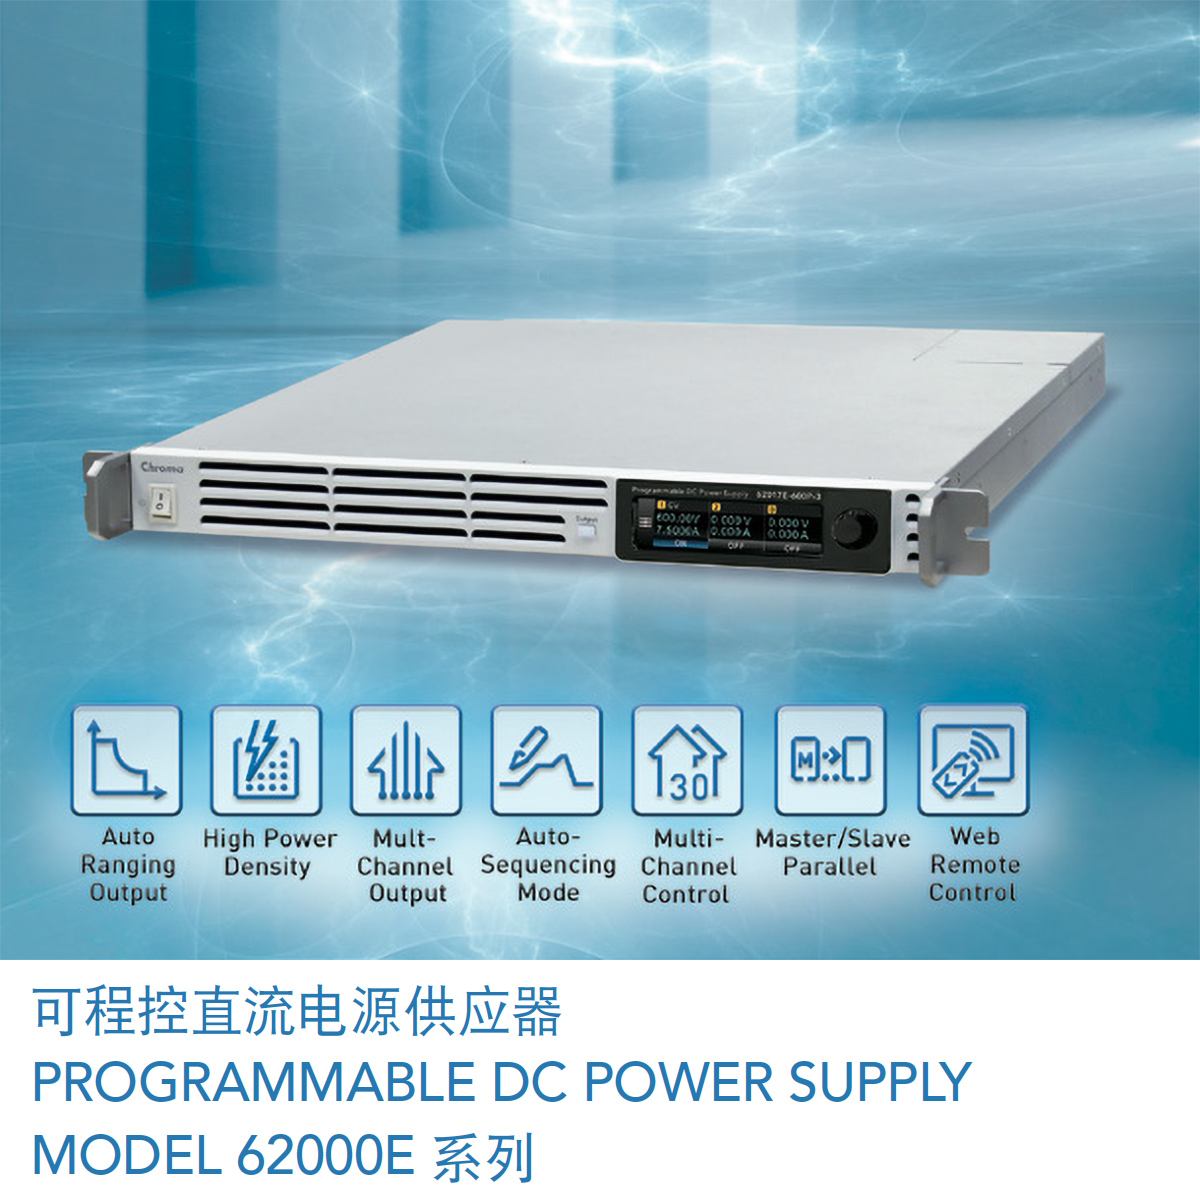 可程控直流电源供应器MODEL 62000E 系列